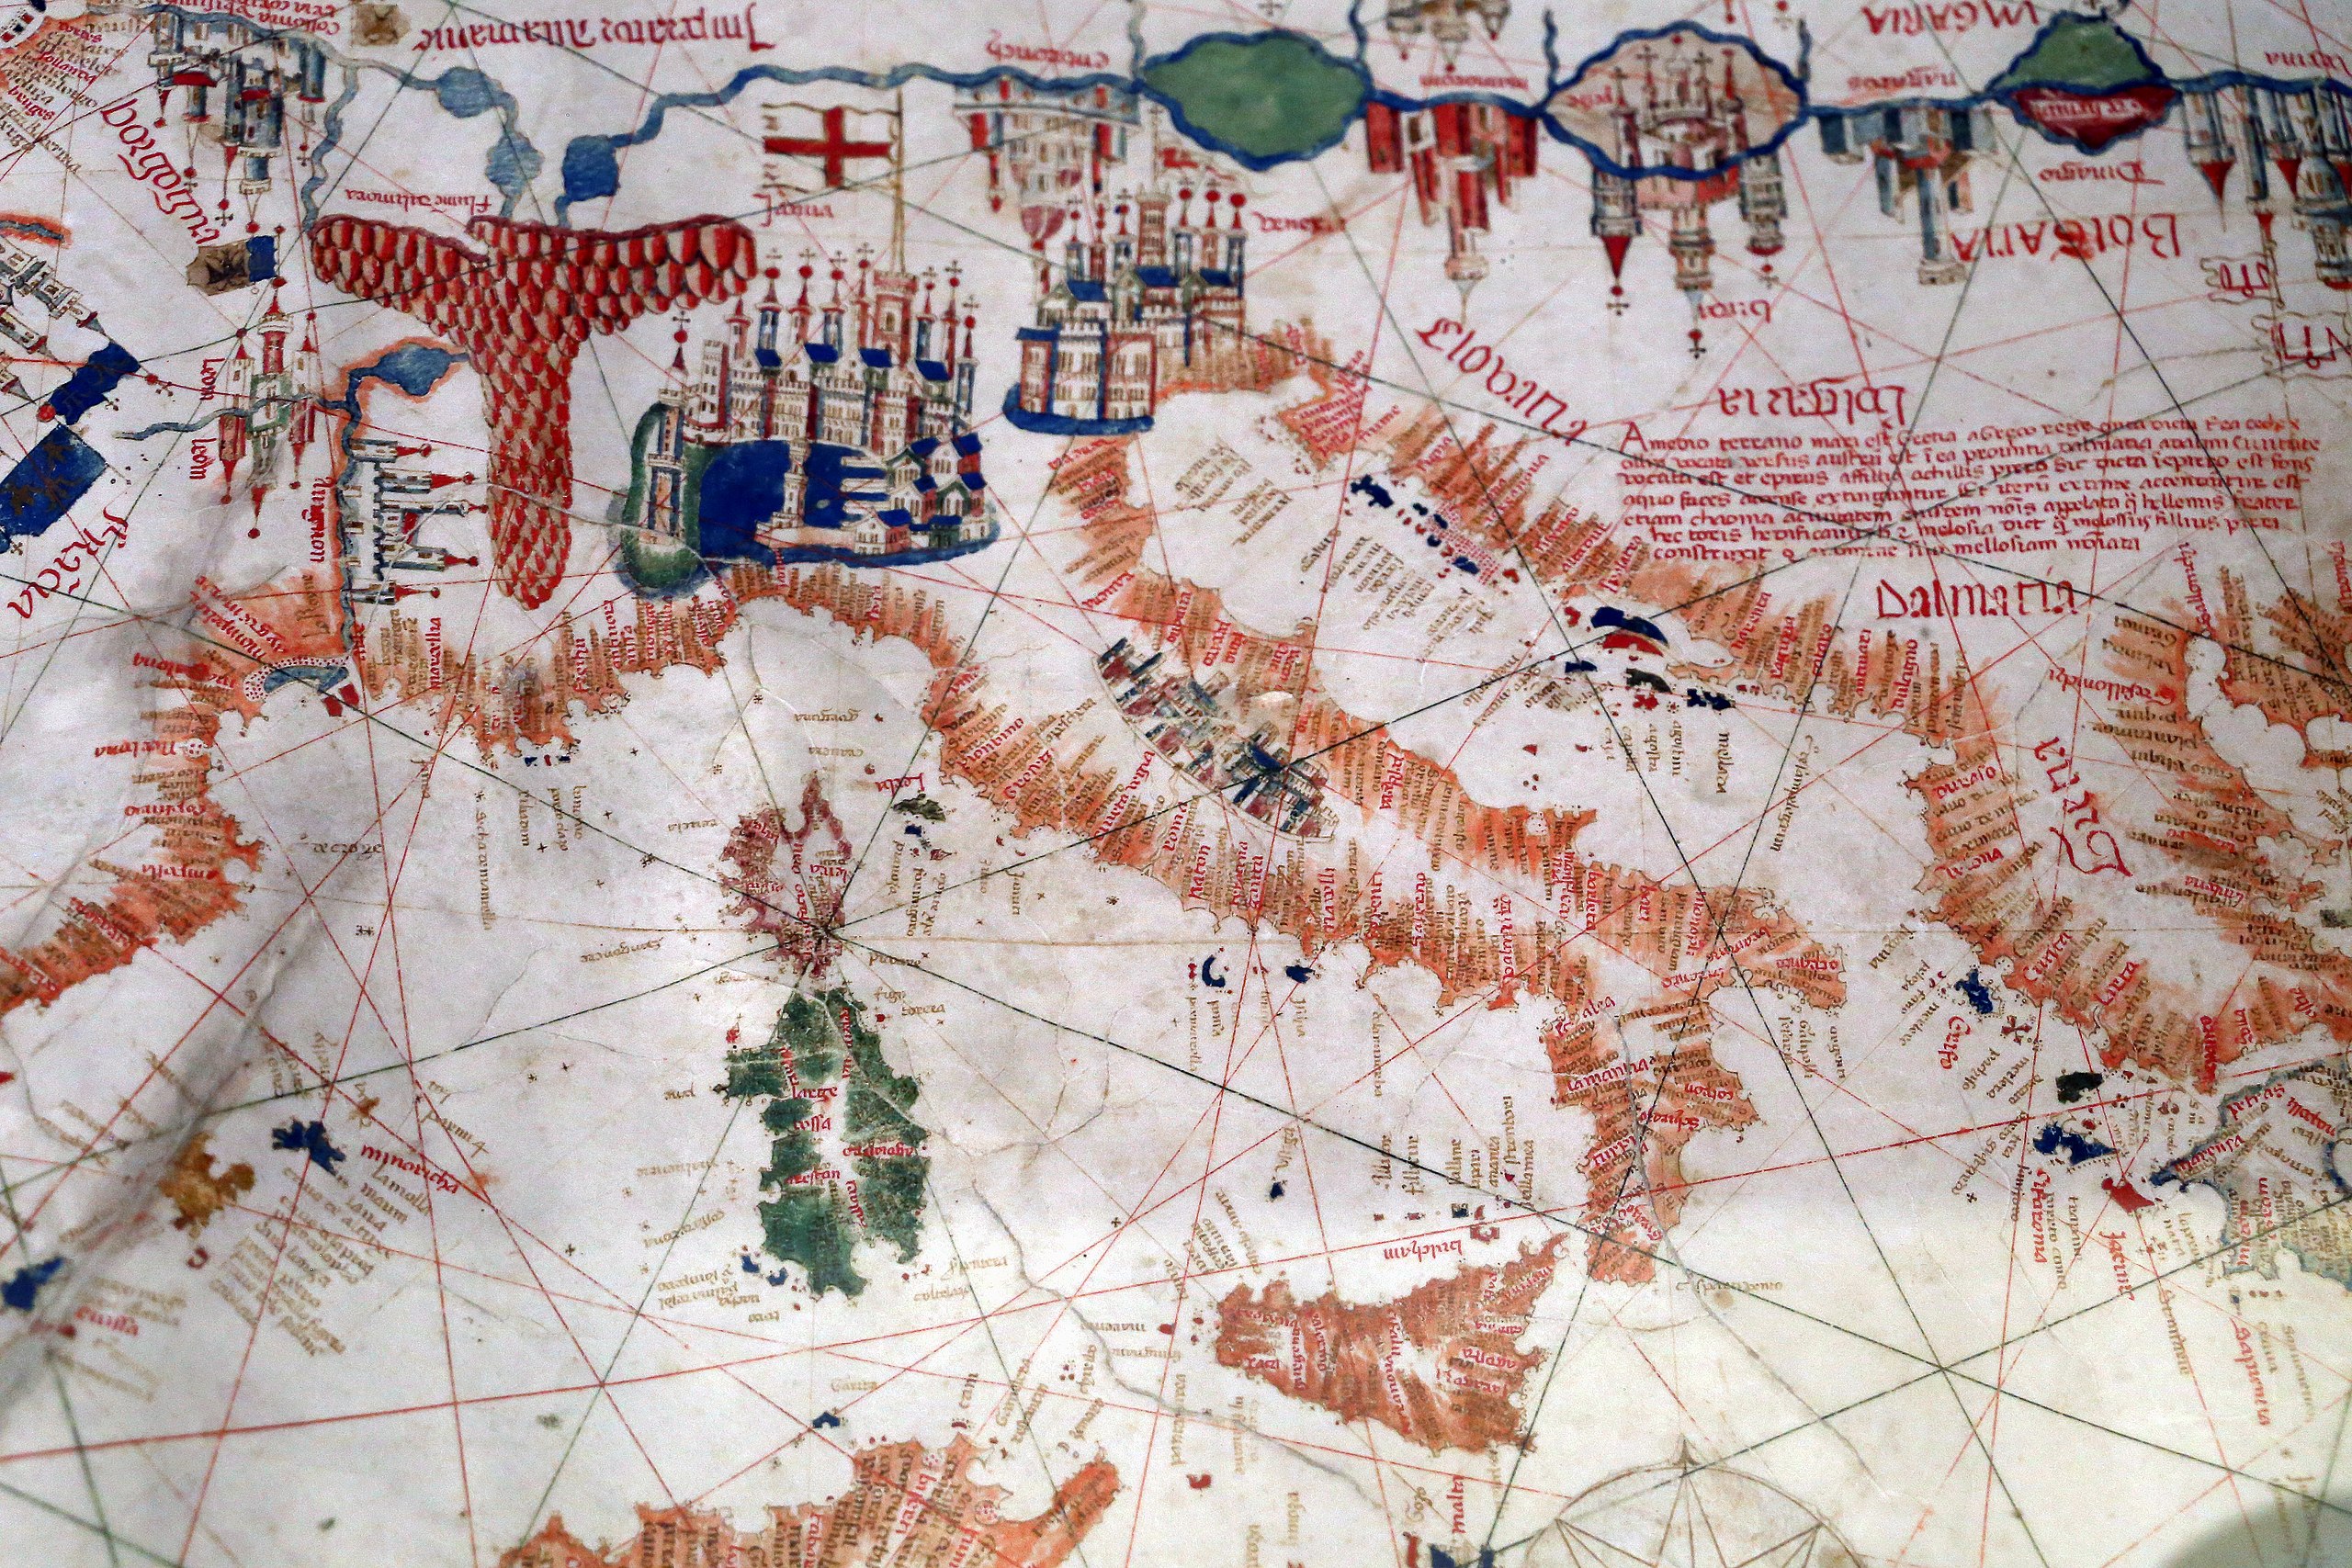 File:Albino de canepa, carta nautica del mediterraneo, 1480 (roma